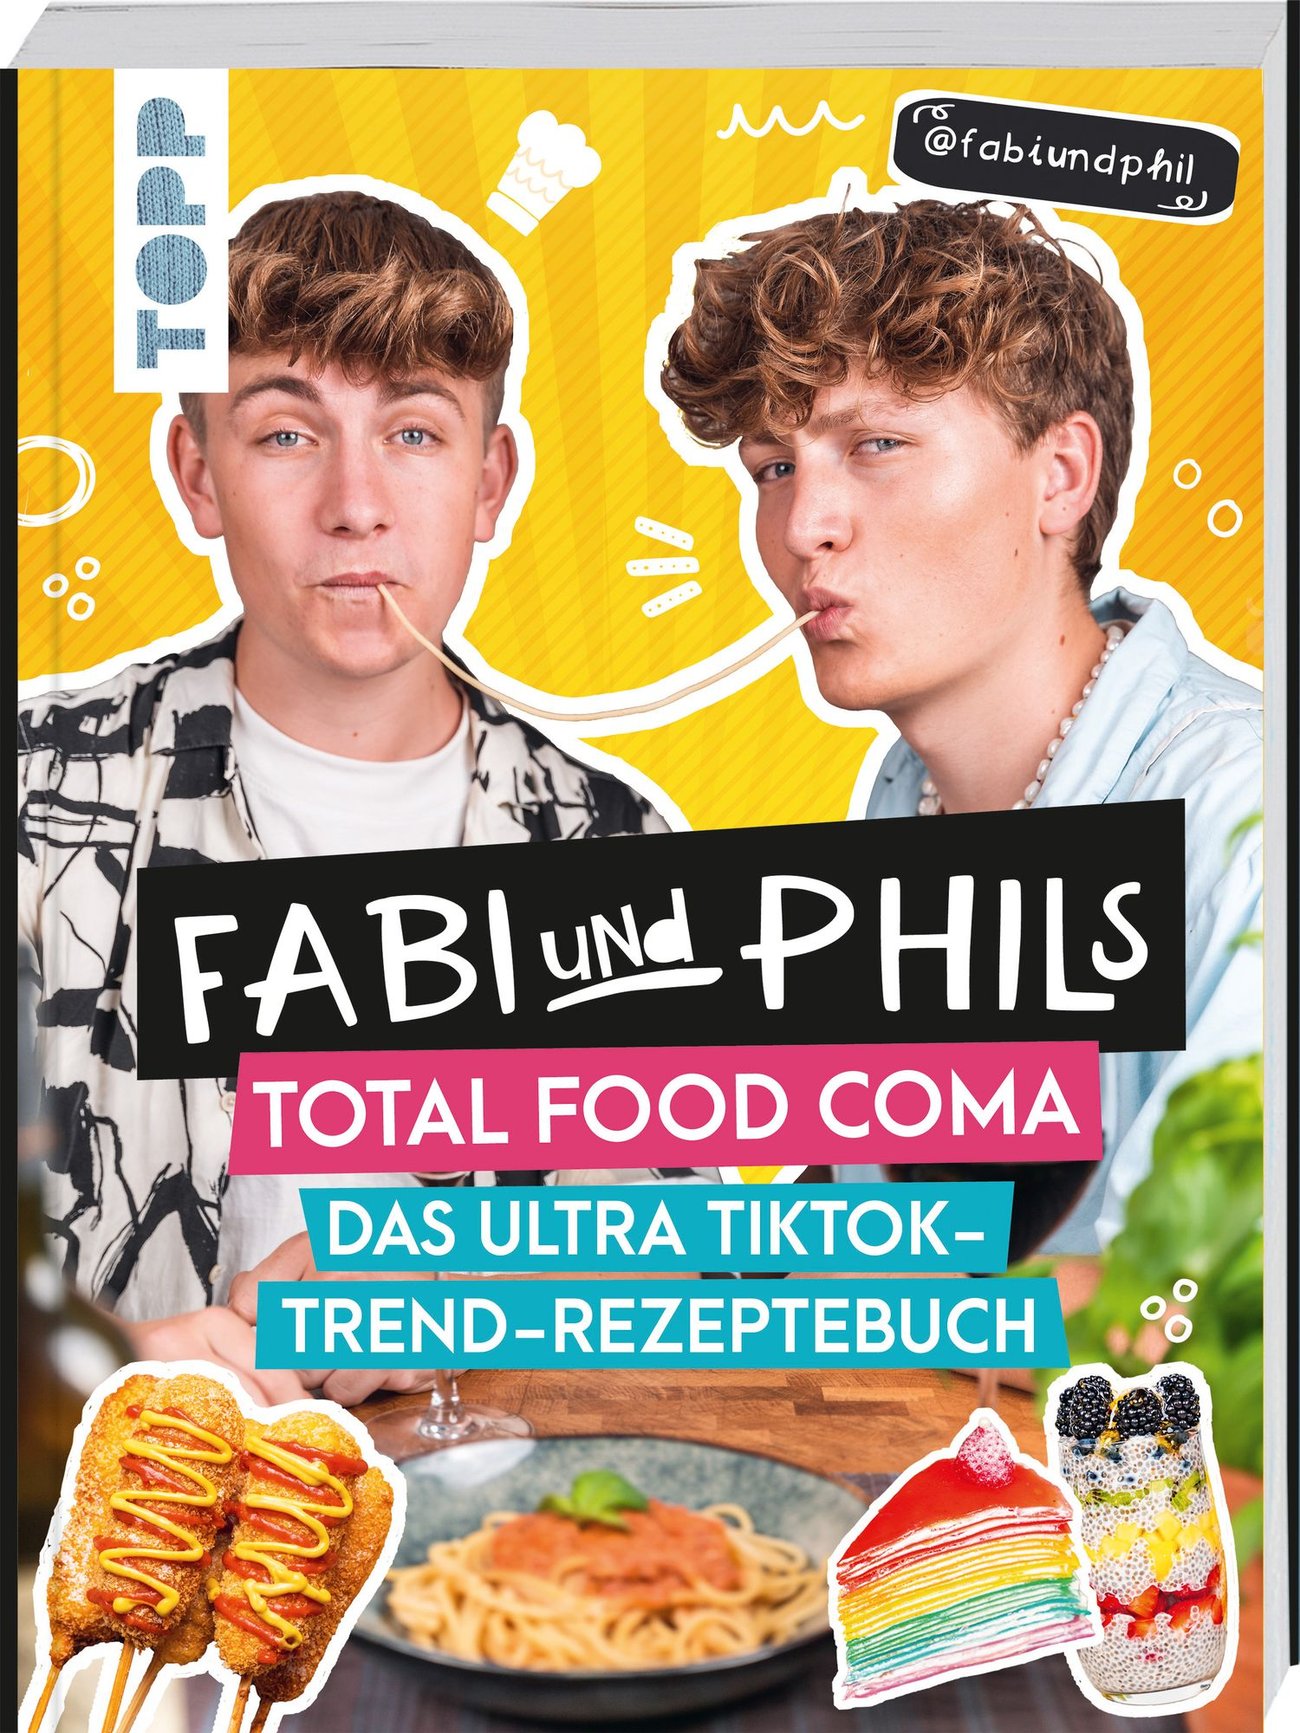 Fabi und Phils Total Food Coma